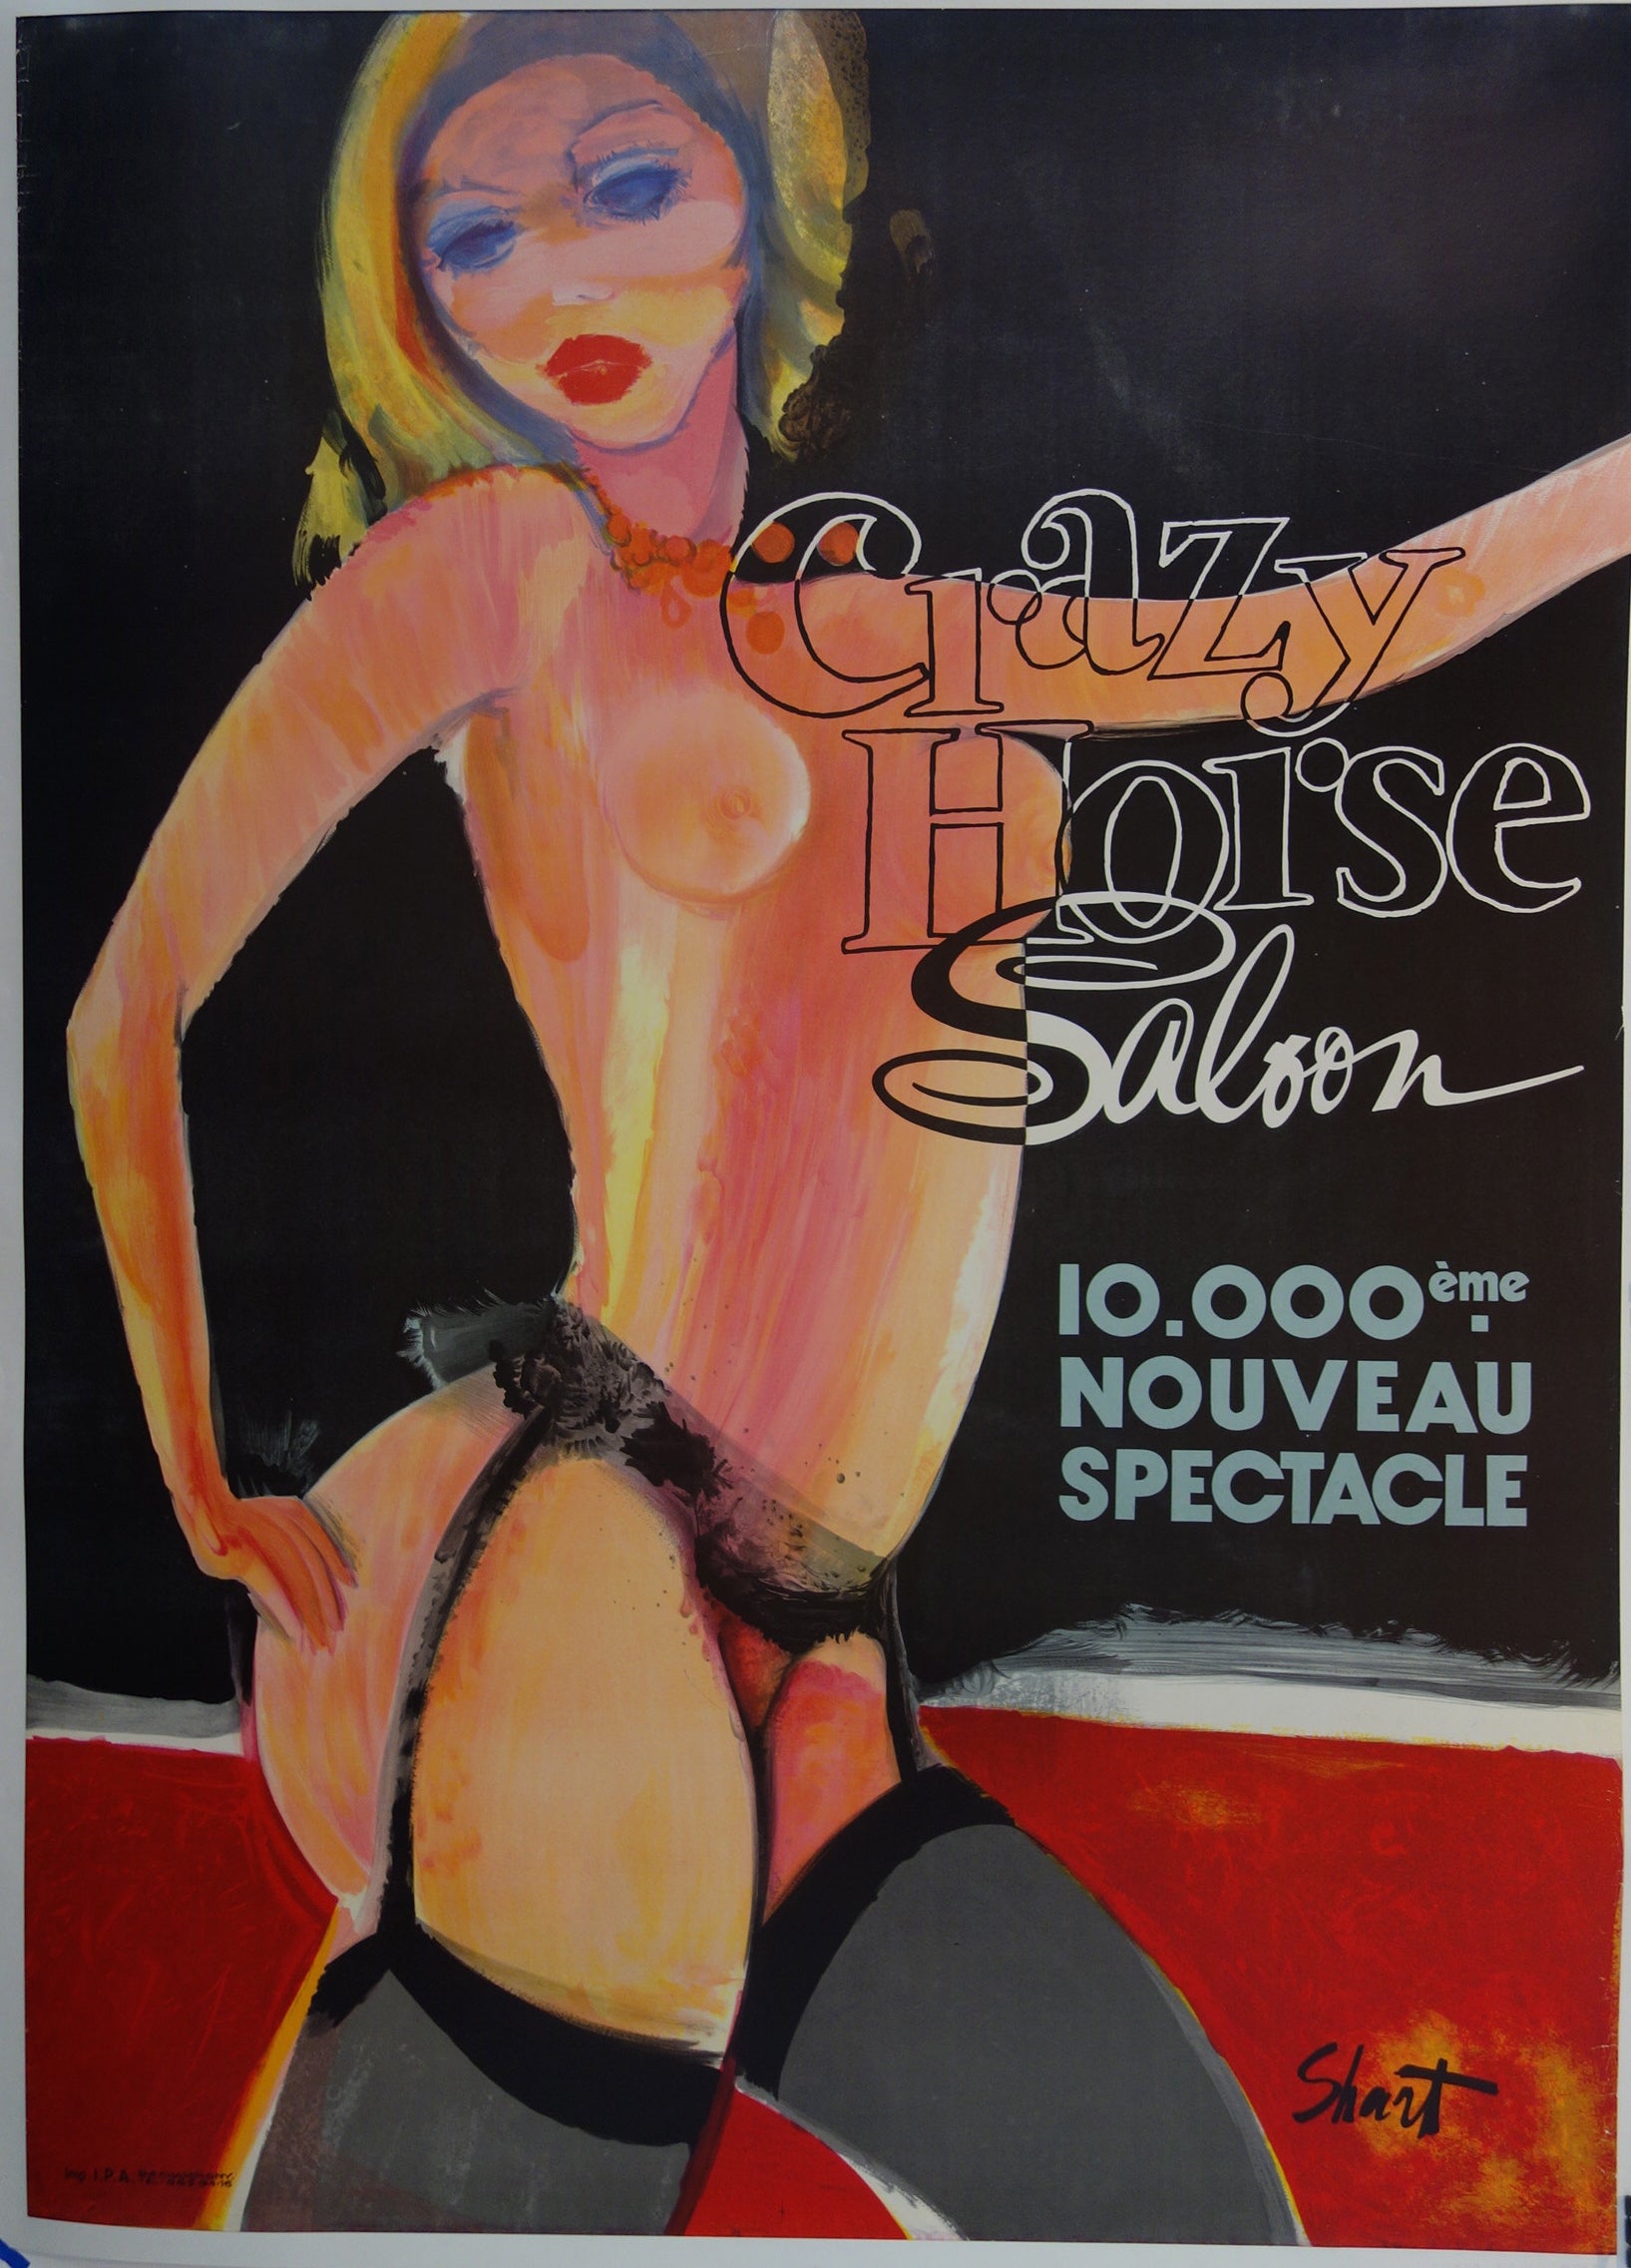 Crazy Horse Salon